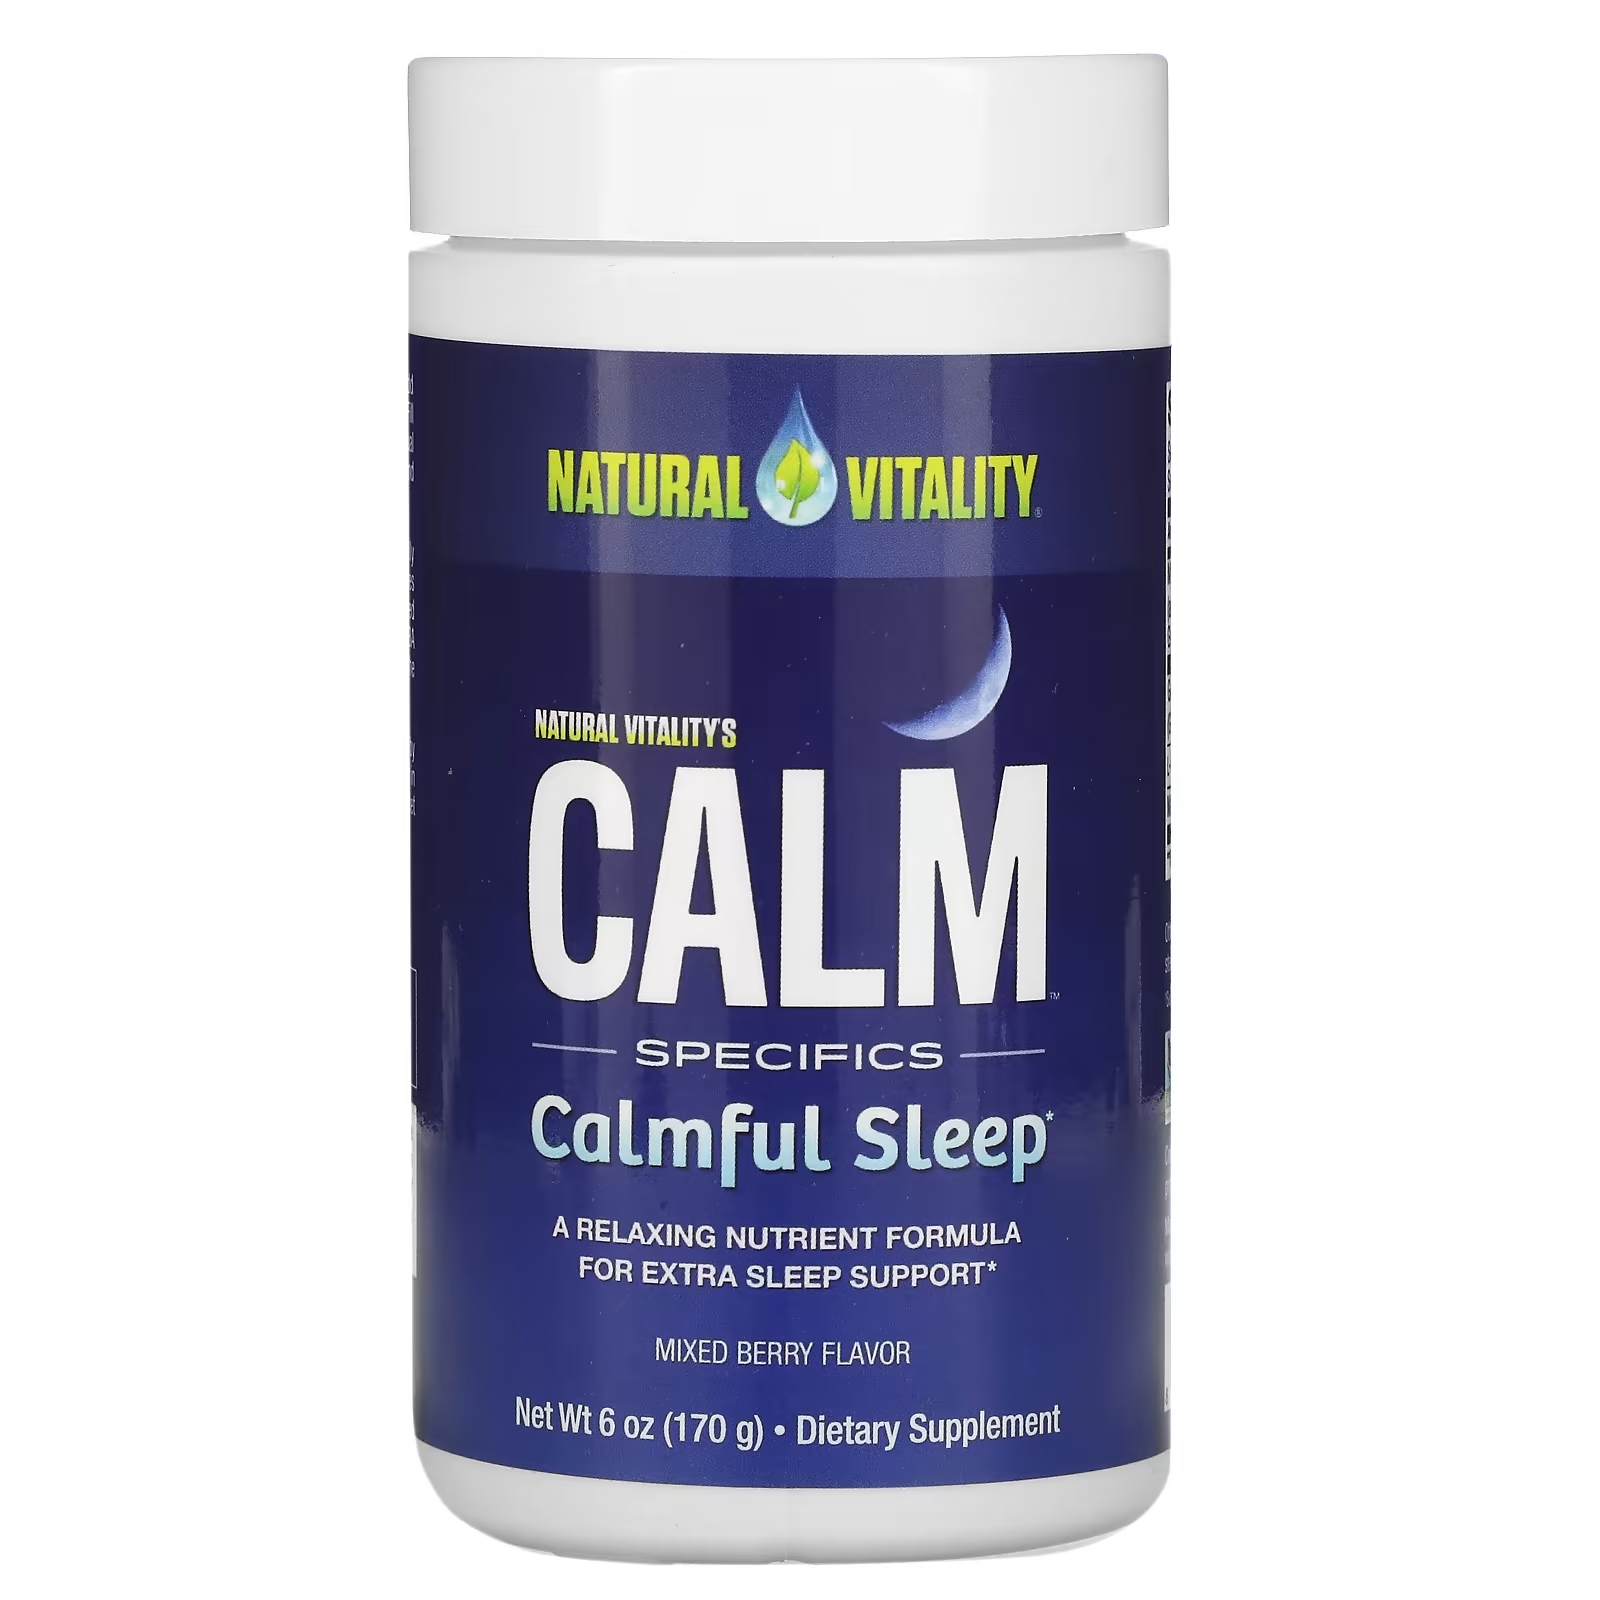 Natural calm. Natural Vitality Calm. Natural Calm магний. Natural Vitality Calm a Magnesium Supplement. Calm Calmful Sleep natural Vitality.